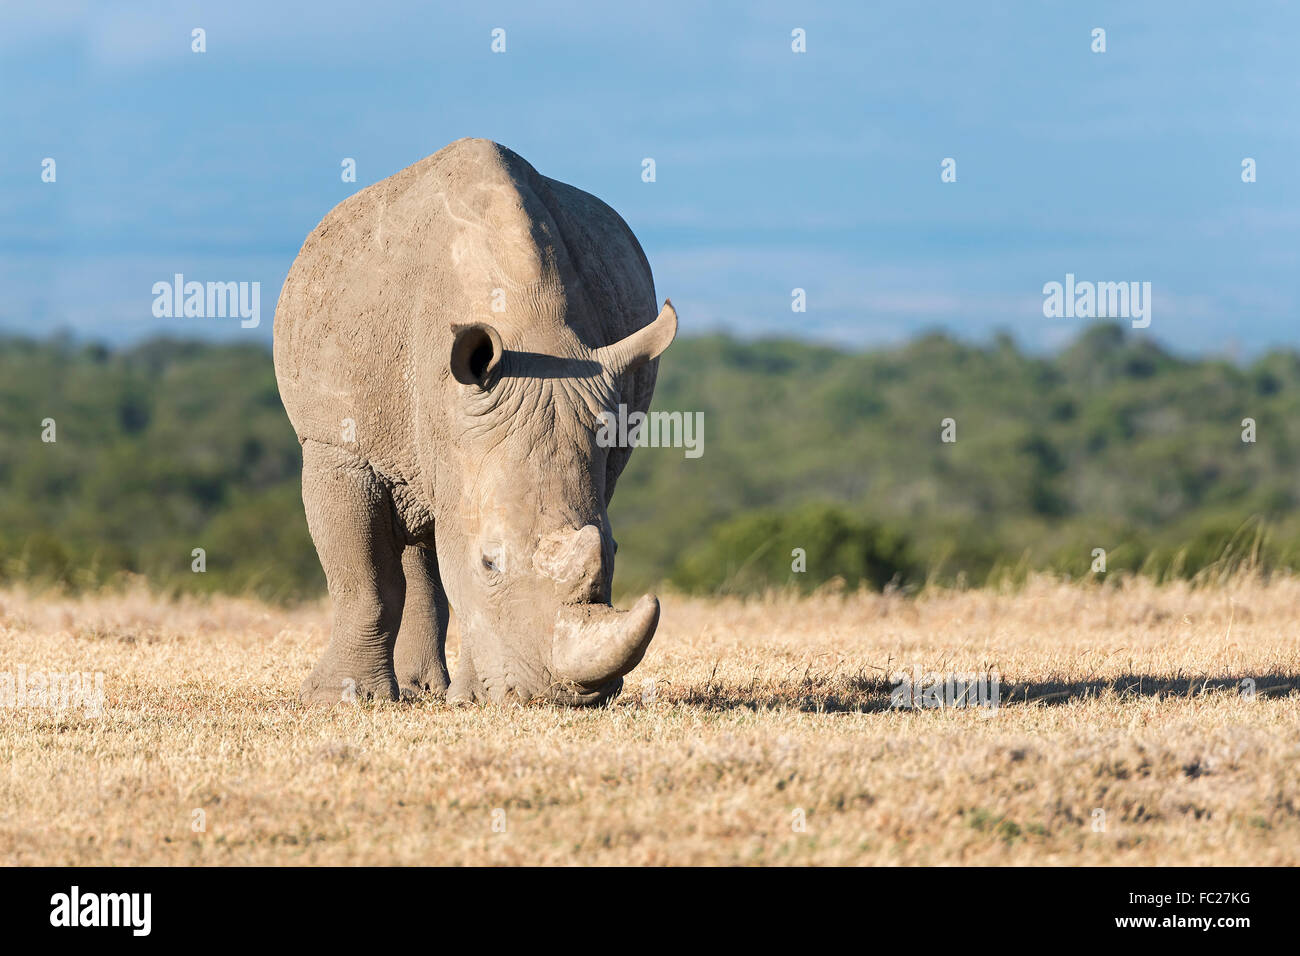 Le rhinocéros blanc (Ceratotherium simum) manger de l'herbe sèche, Ol Pejeta Reserve, Kenya Banque D'Images